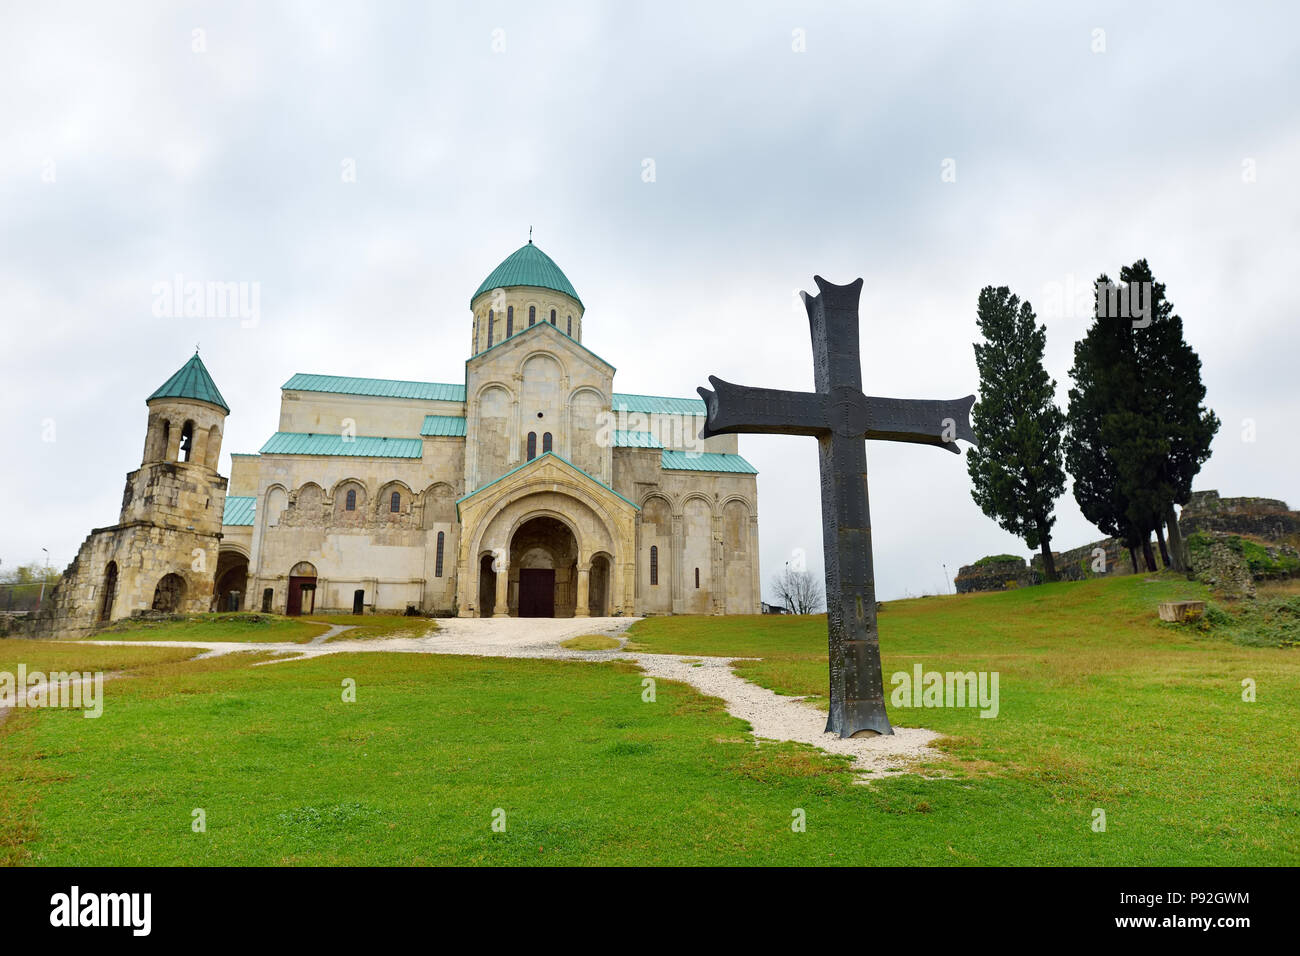 La cattedrale della Dormizione o la Cattedrale di Kutaisi, più comunemente conosciuta come la Cattedrale di Bagrati, situato nella città di Kutaisi, Imereti reg Foto Stock